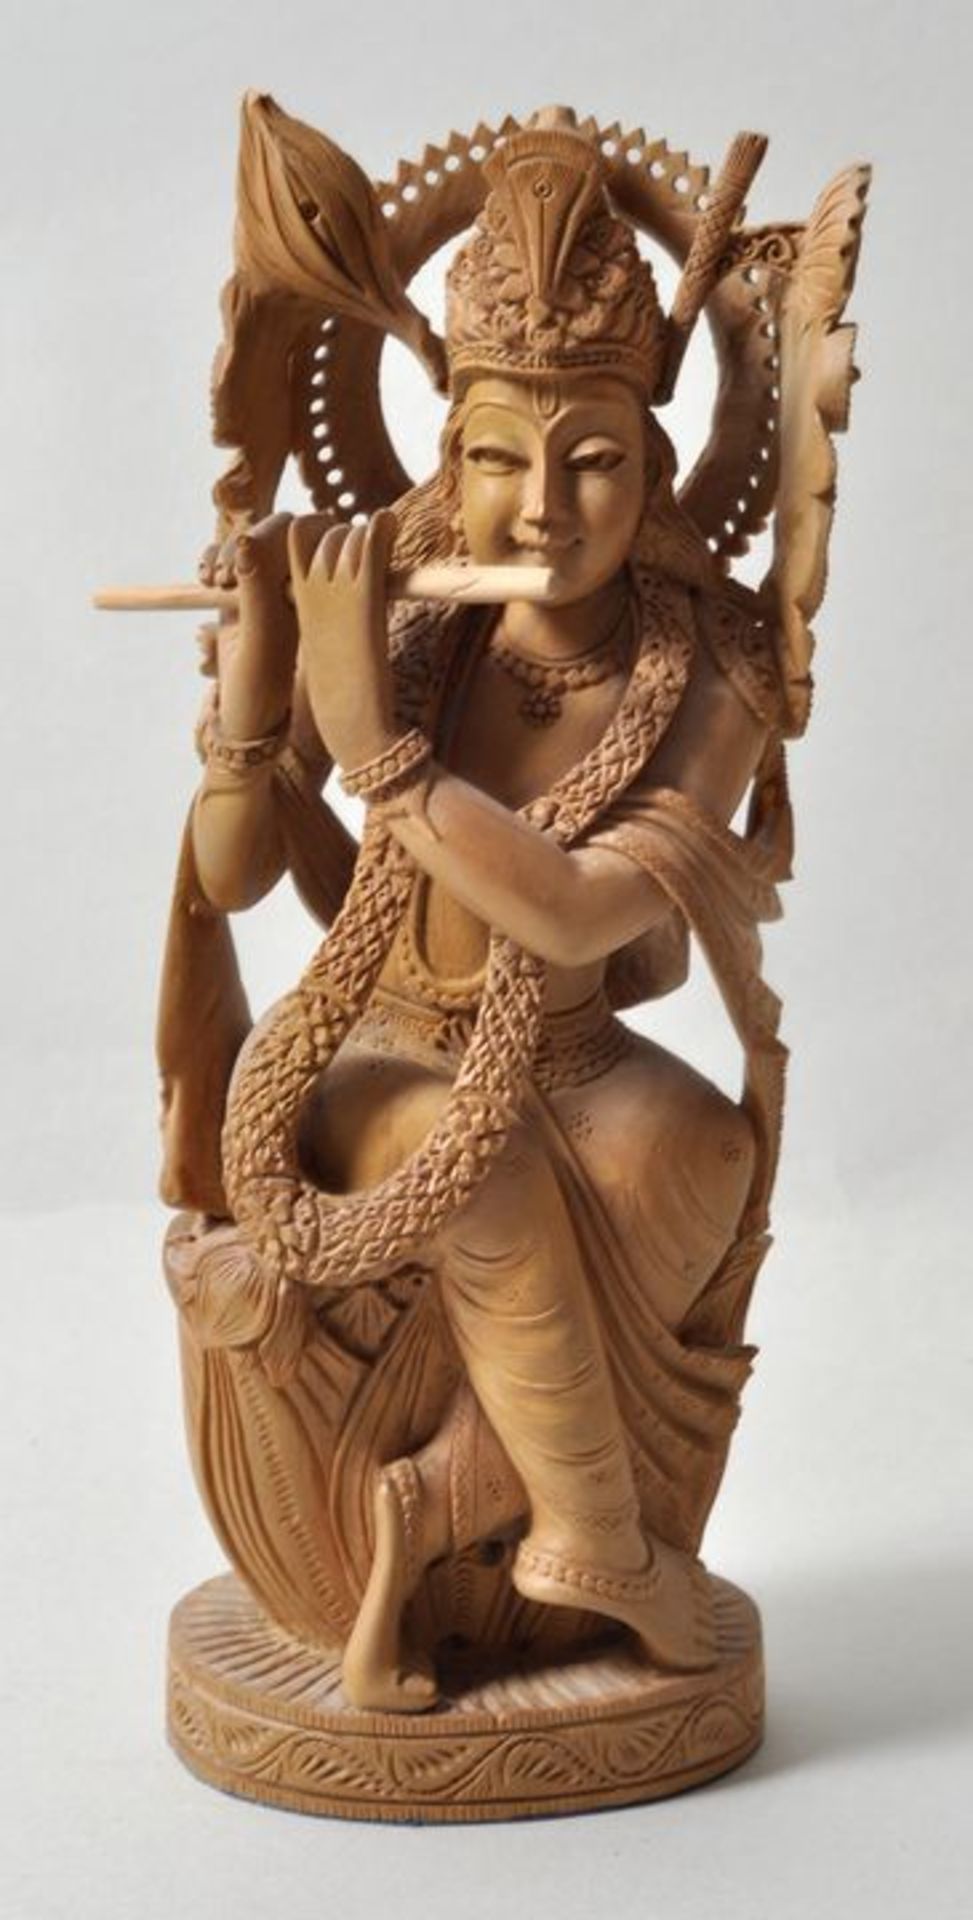 Indien. Krishna.Sandelholz, geschnitzt. Aufwenig gearbeitete Figur der hinduistischen Gottheit